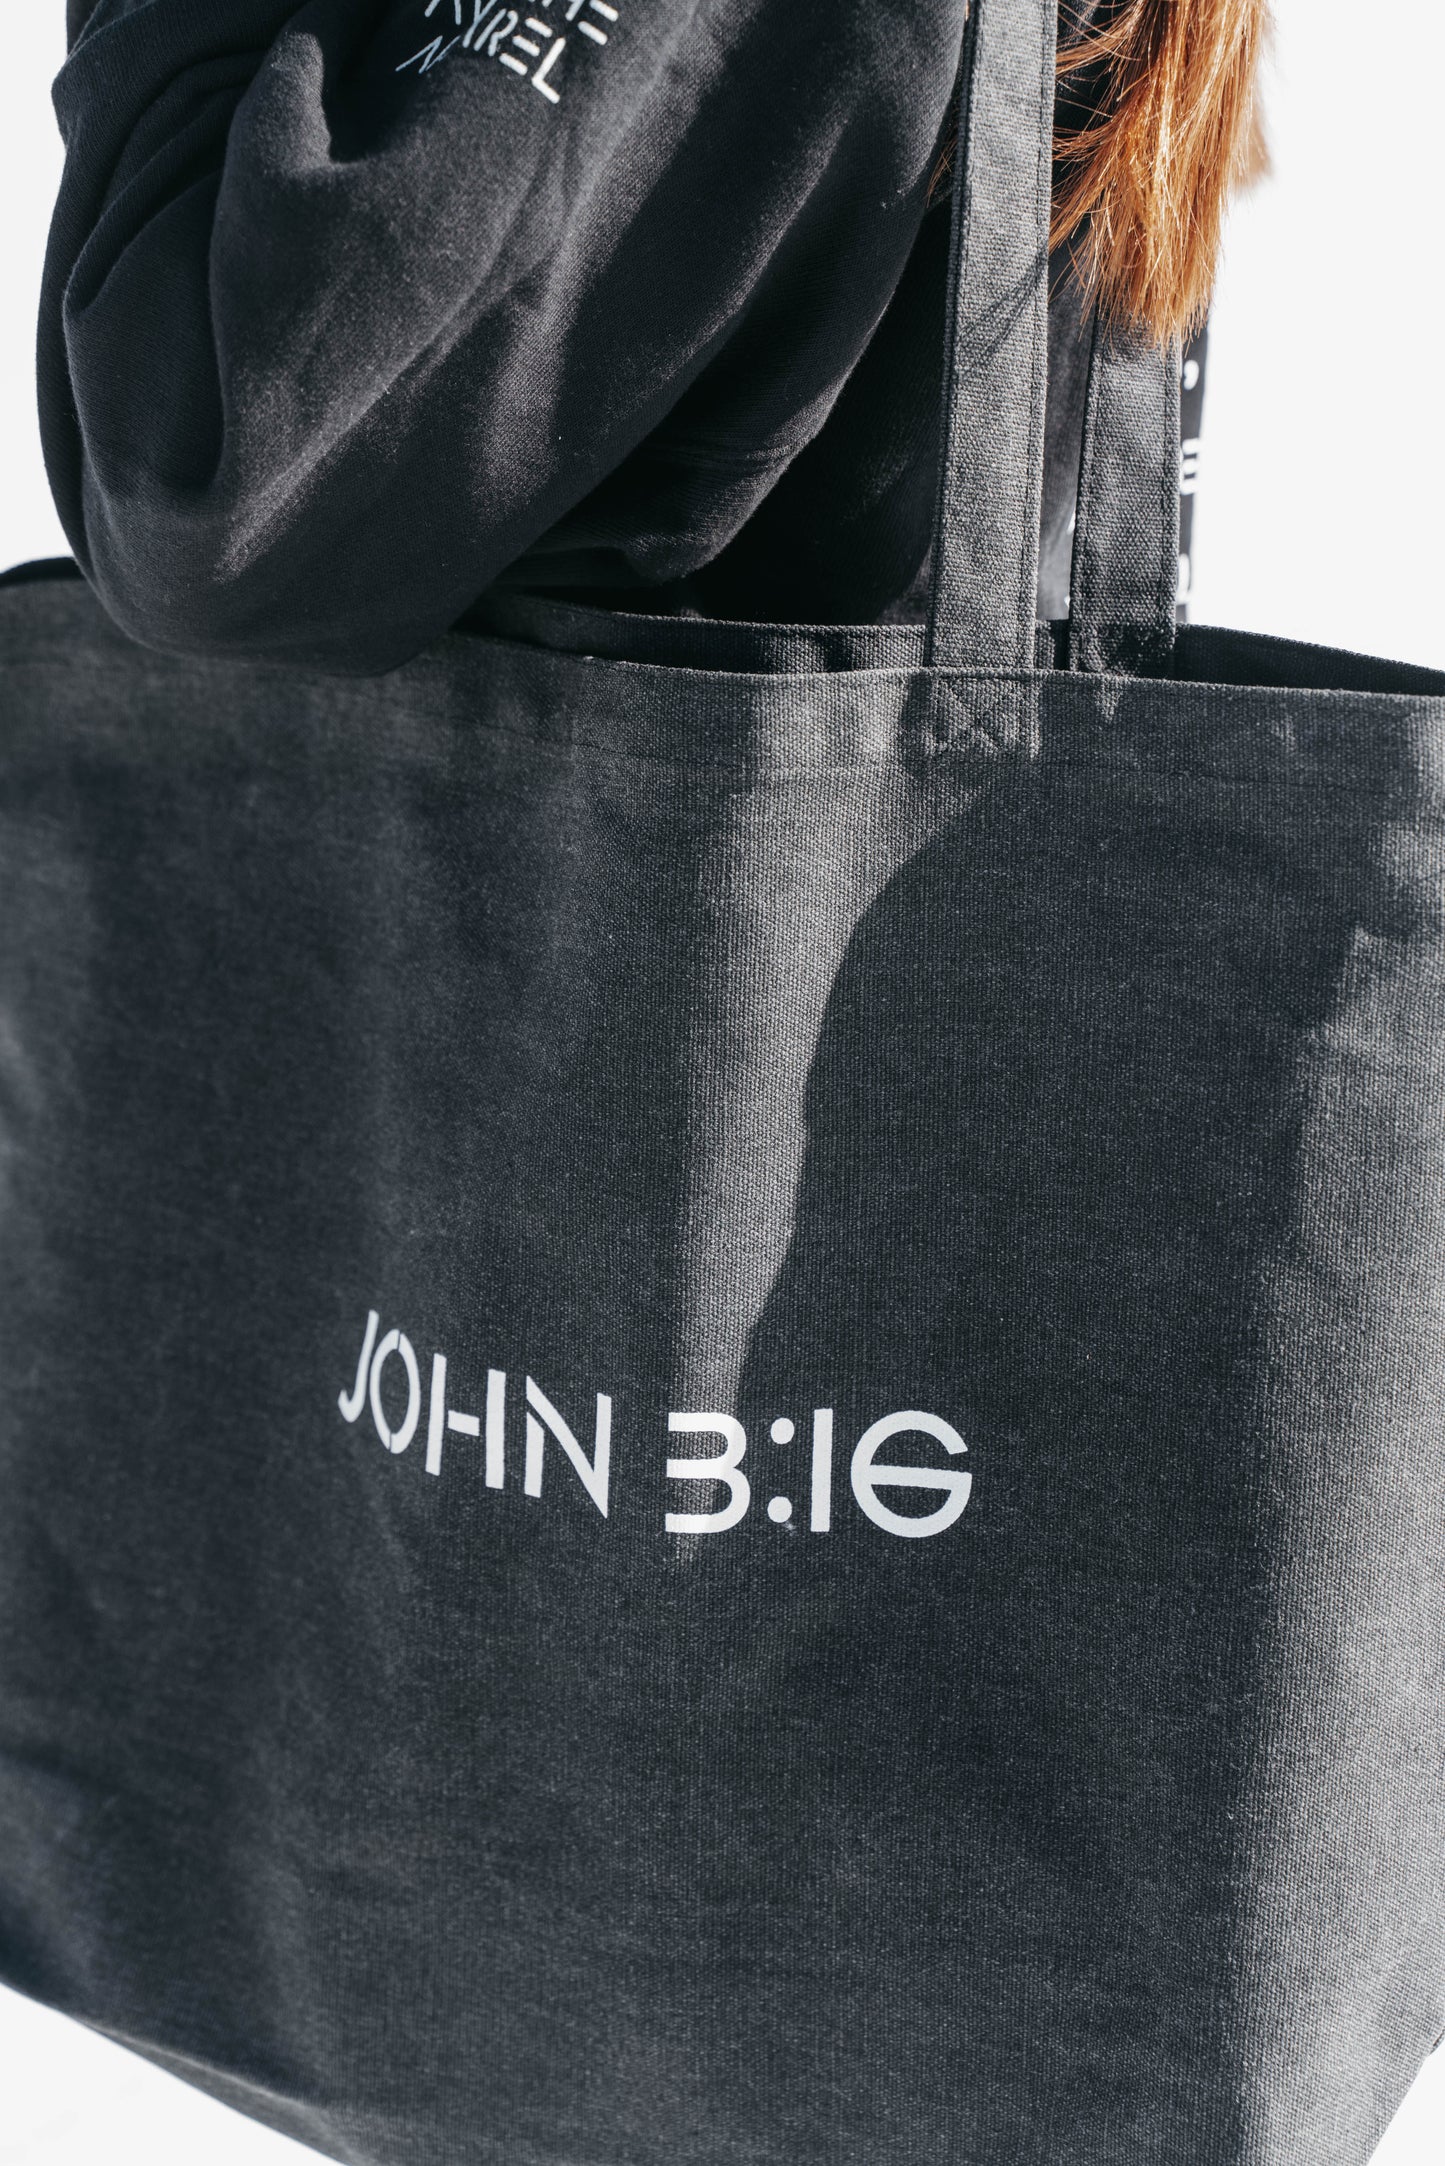 " JOHN 3:16 " Grey Tote Bag